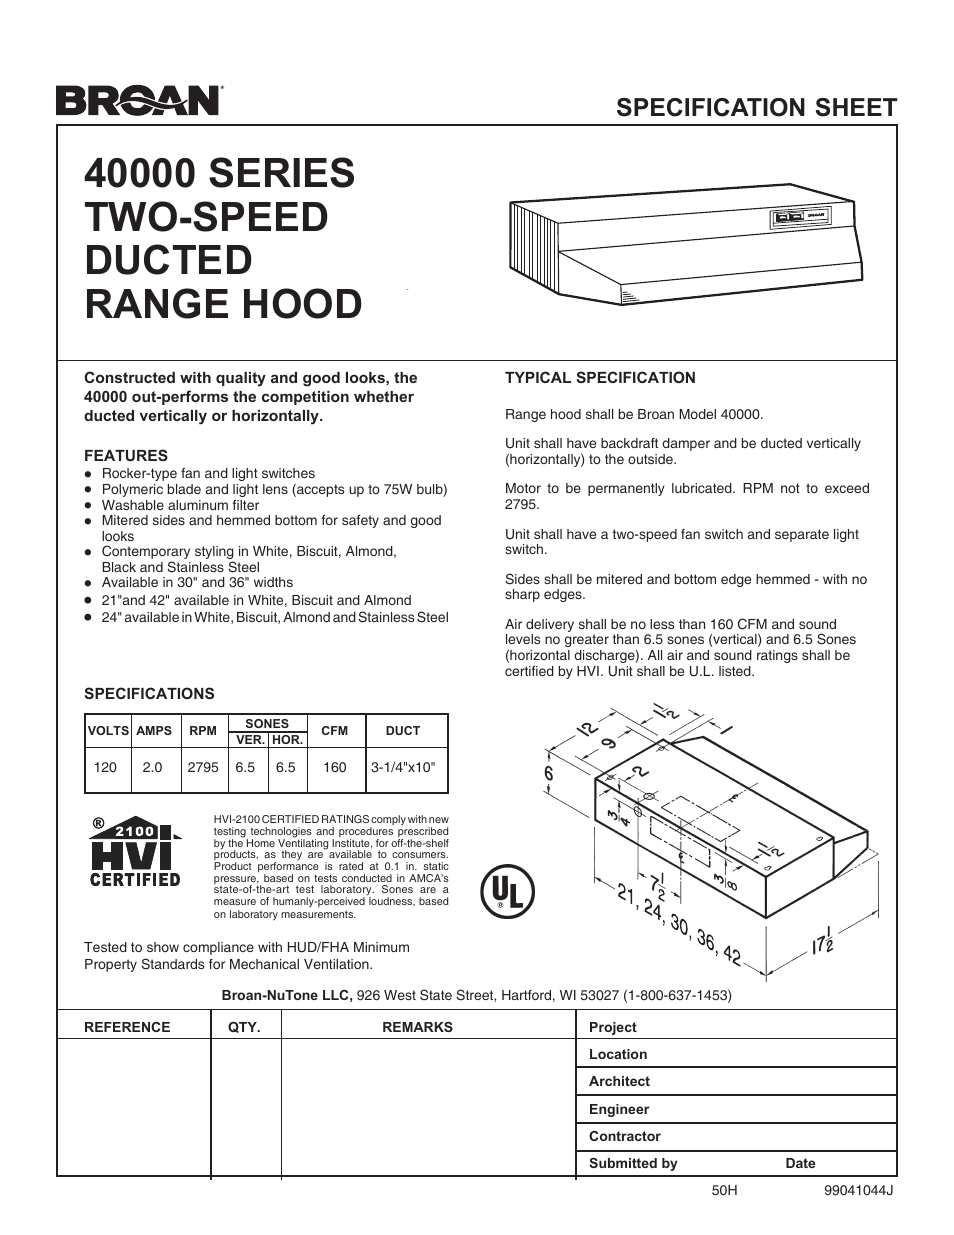 Two-Speed Ducted Range Hood 40000 Series